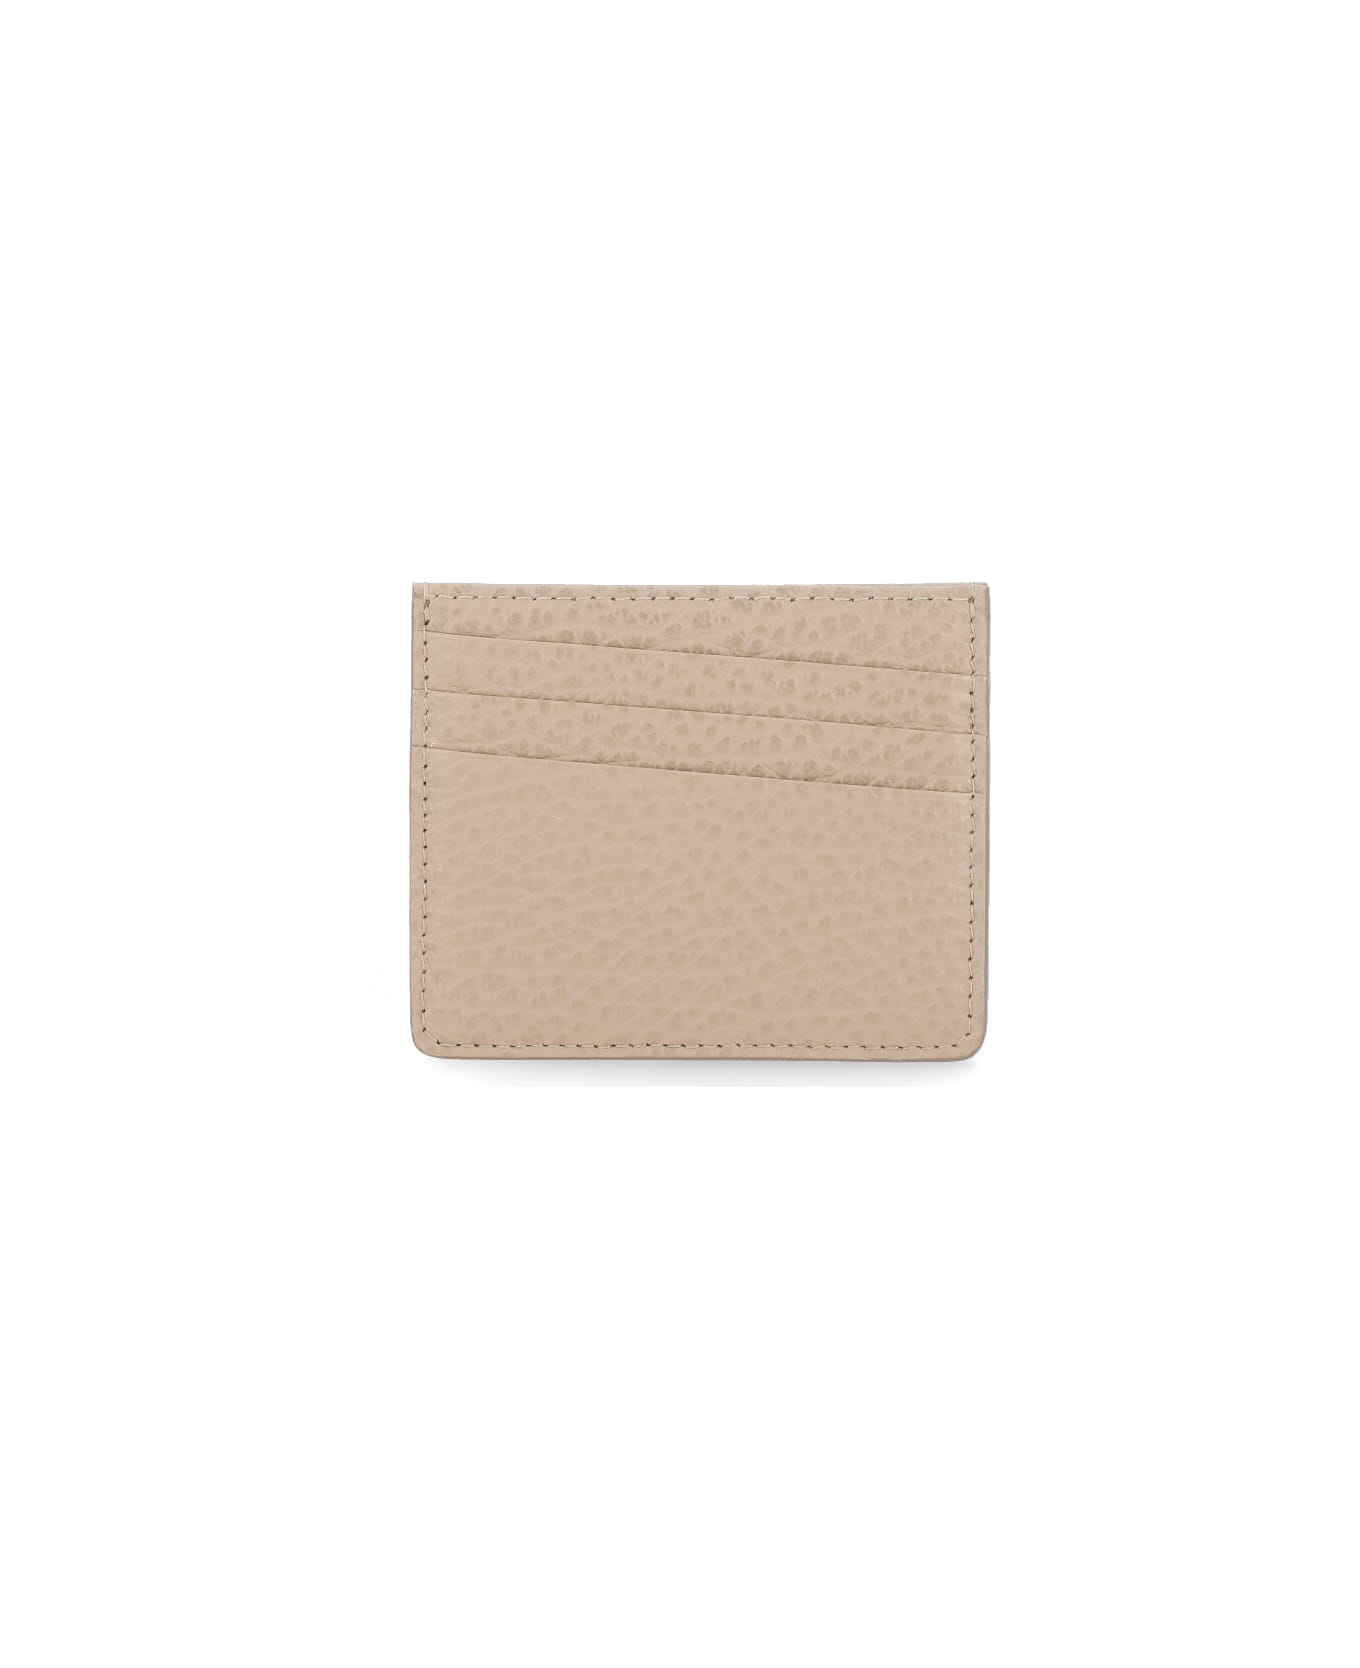 Maison Margiela Four Stitches Wallet - Beige 財布